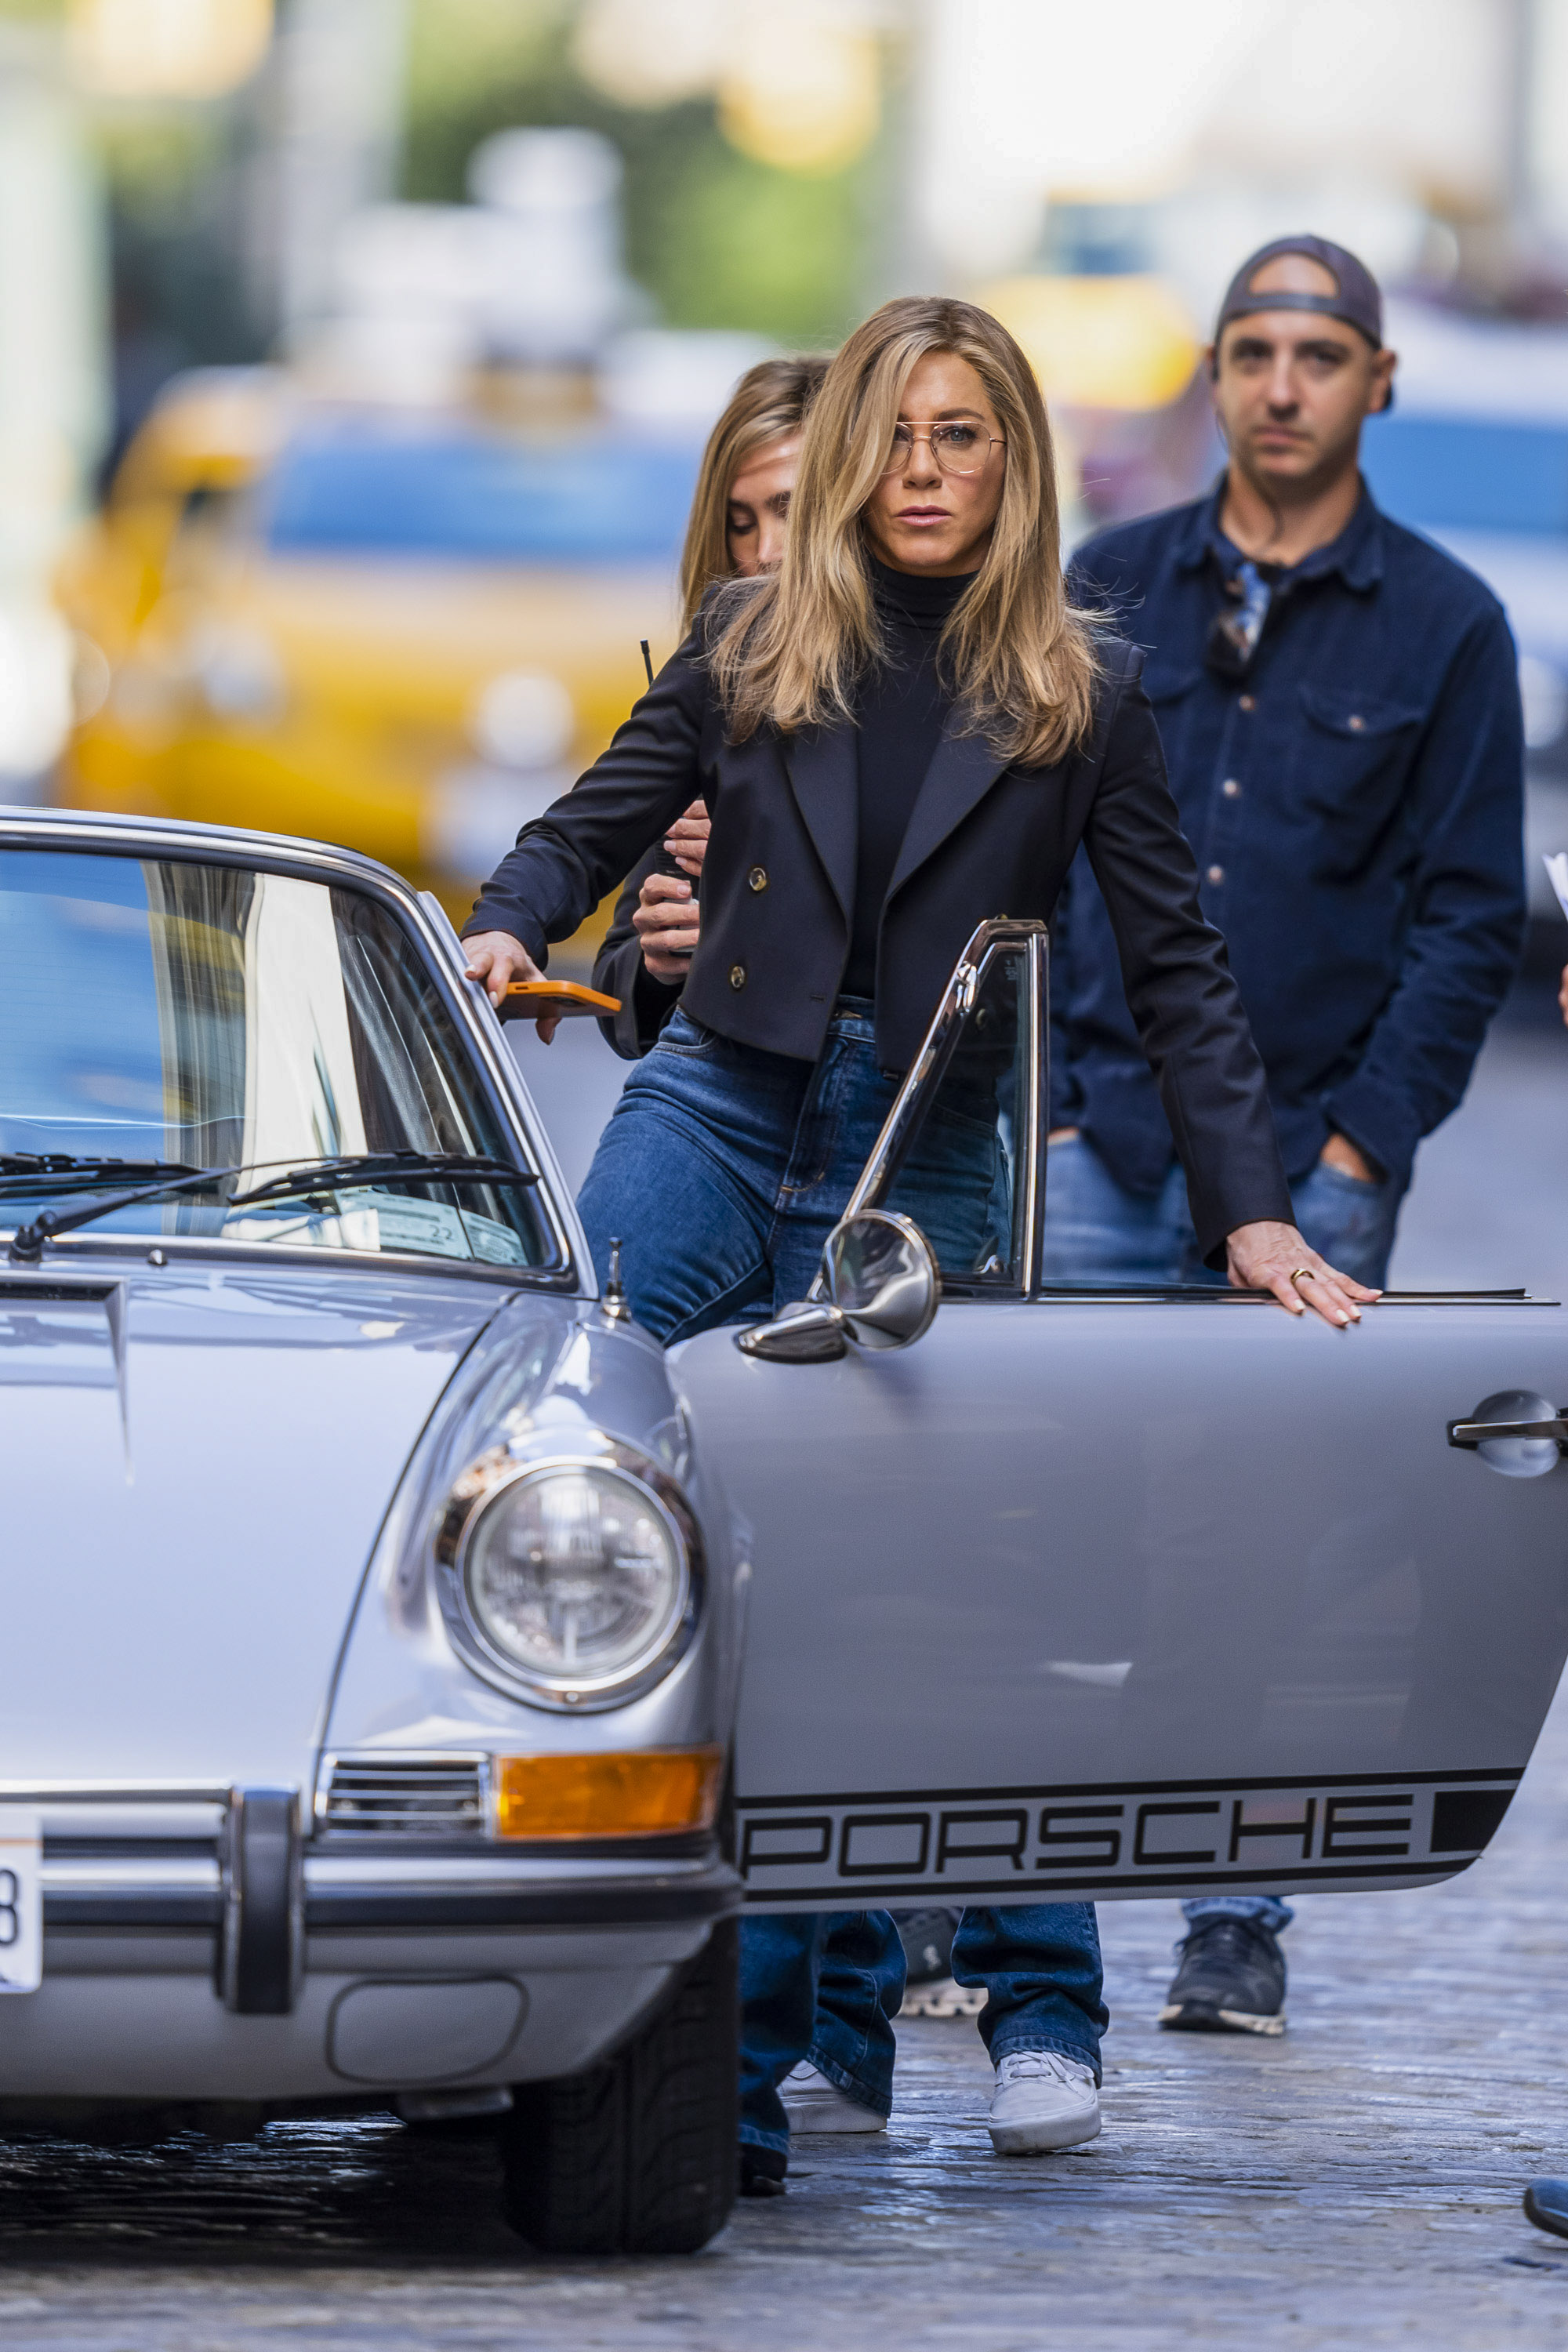 Jennifer Aniston se sube a un Porsche 911 convertible clásico en el marco del rodaje del nuevo filme que protagonizará, The morning show. La filmación se está haciendo en la ciudad de Nueva York